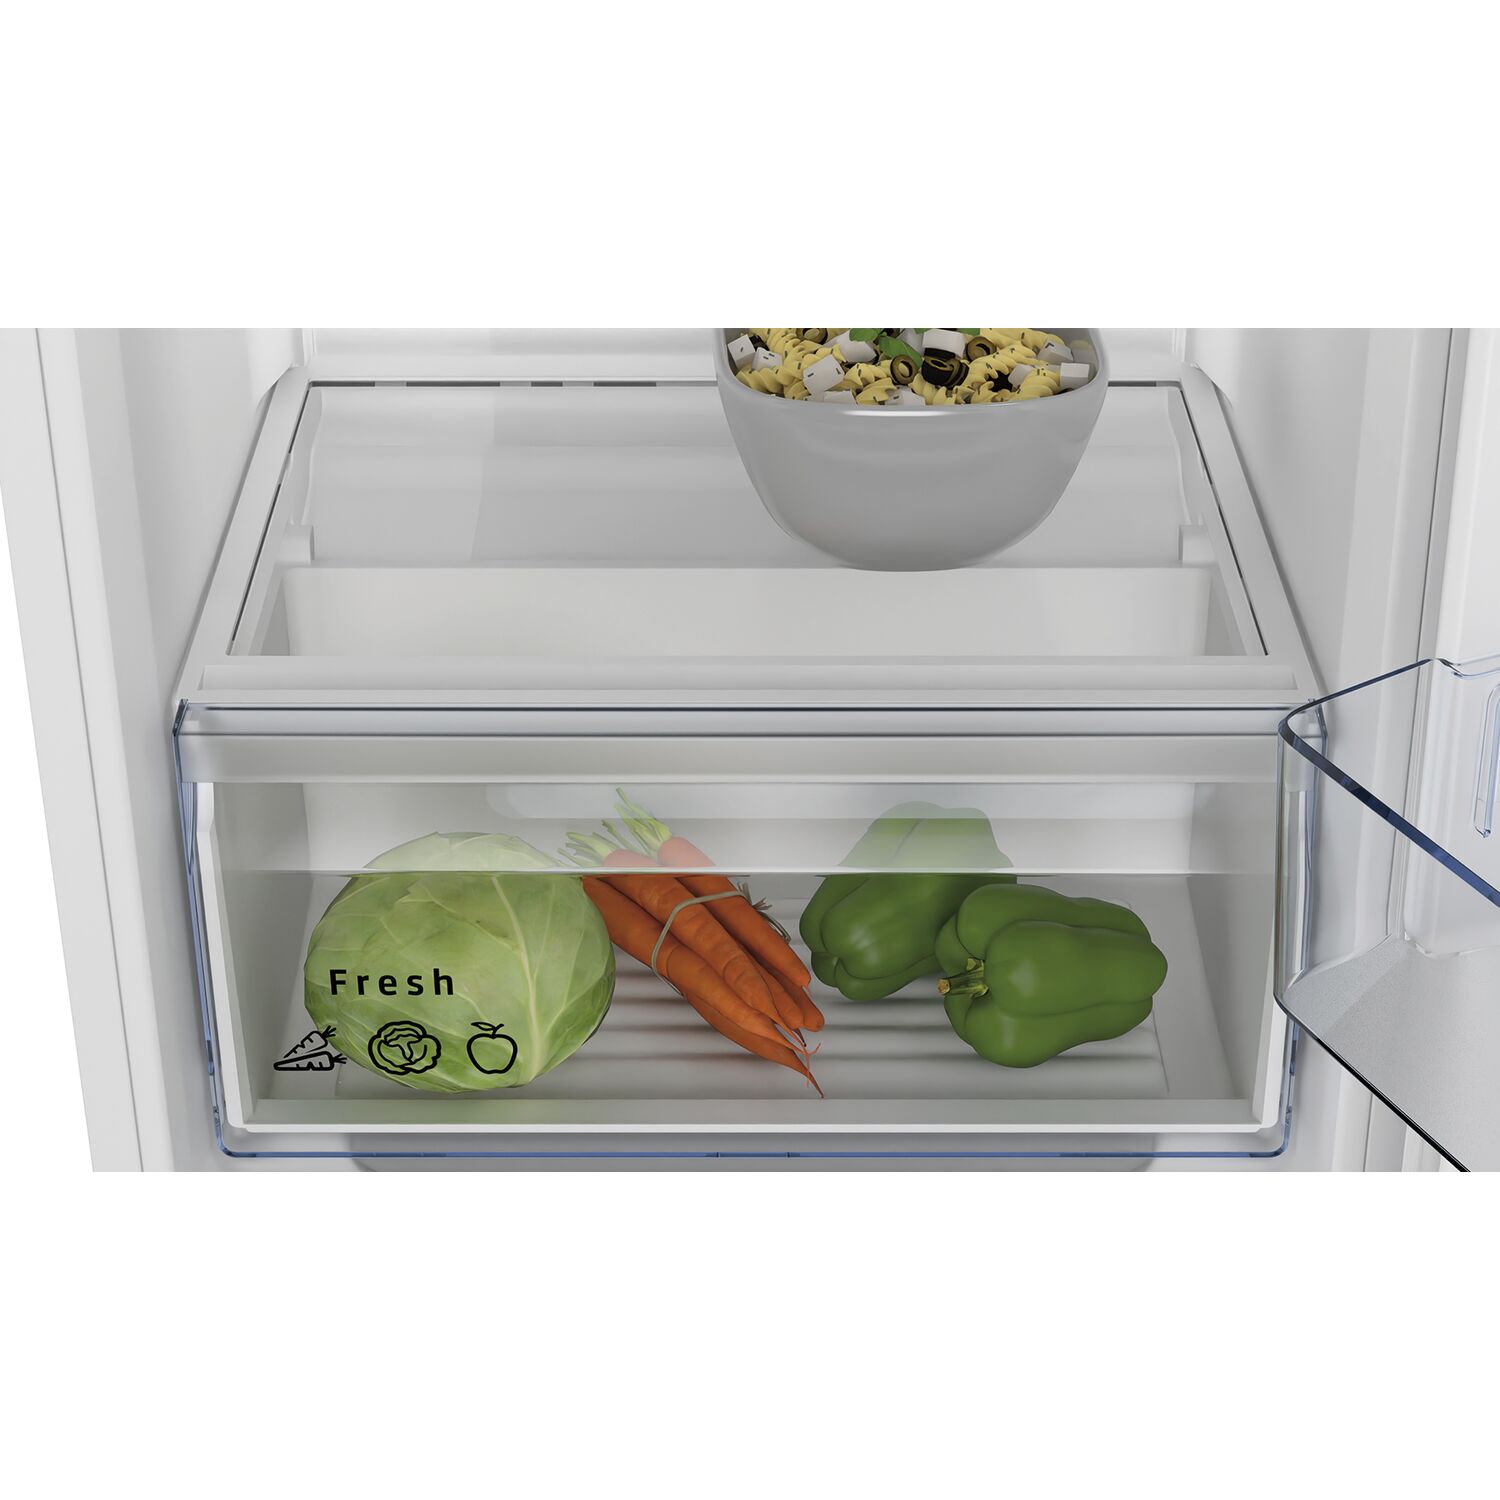 CK642EF0 Einbau-Kühlschrank mit Gefrierfach weiß / F